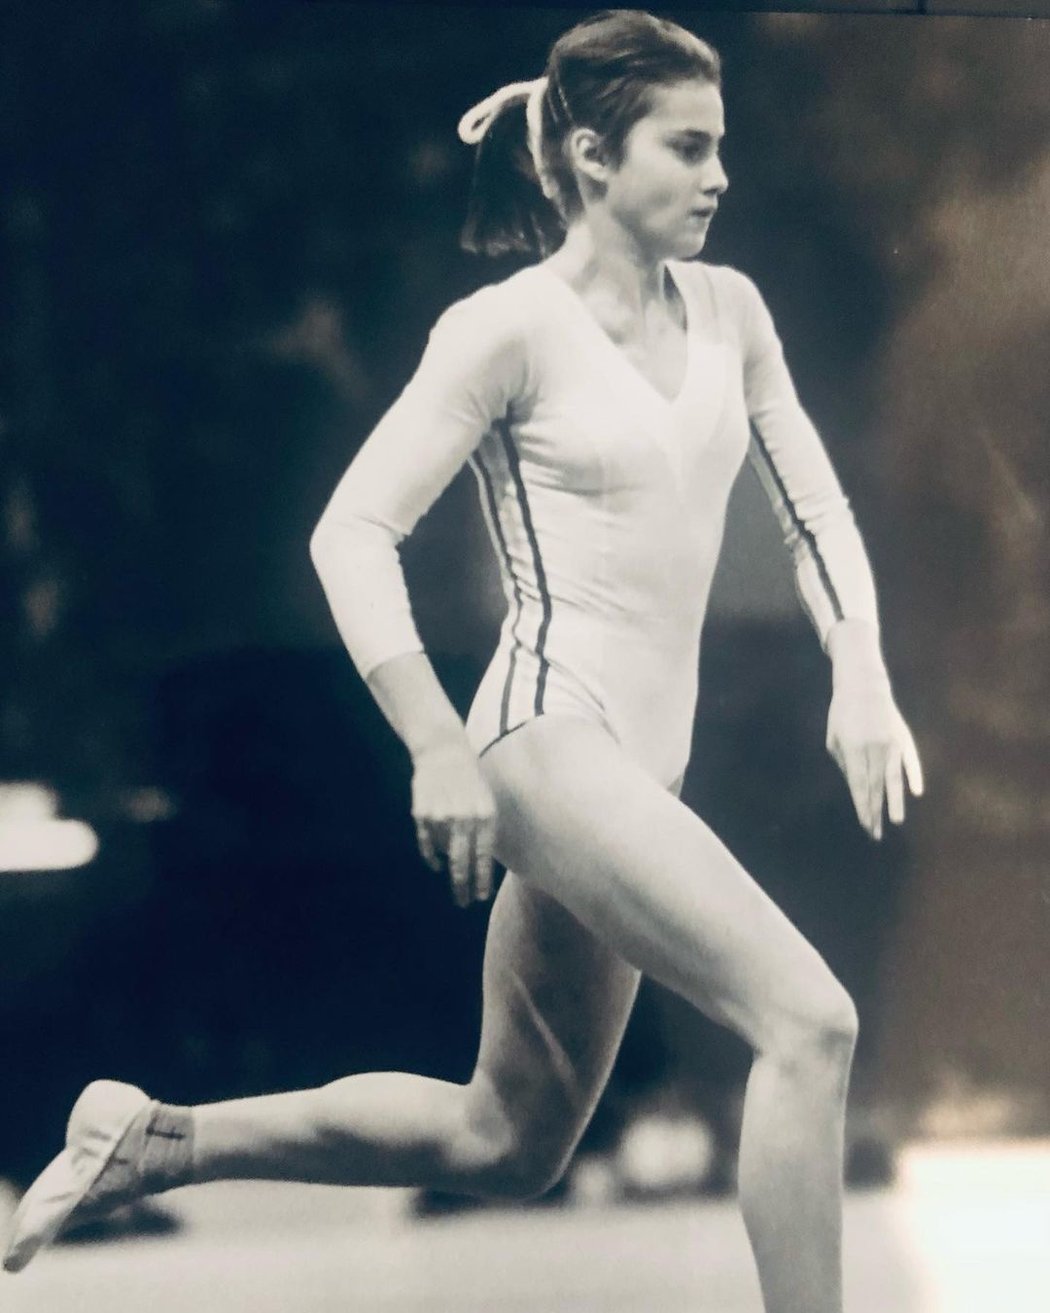 Rumunská gymnastka Nadia Comaneciová si v roce 1976 podmanila díky třem zlatým medailím olympiádu v Montrealu.